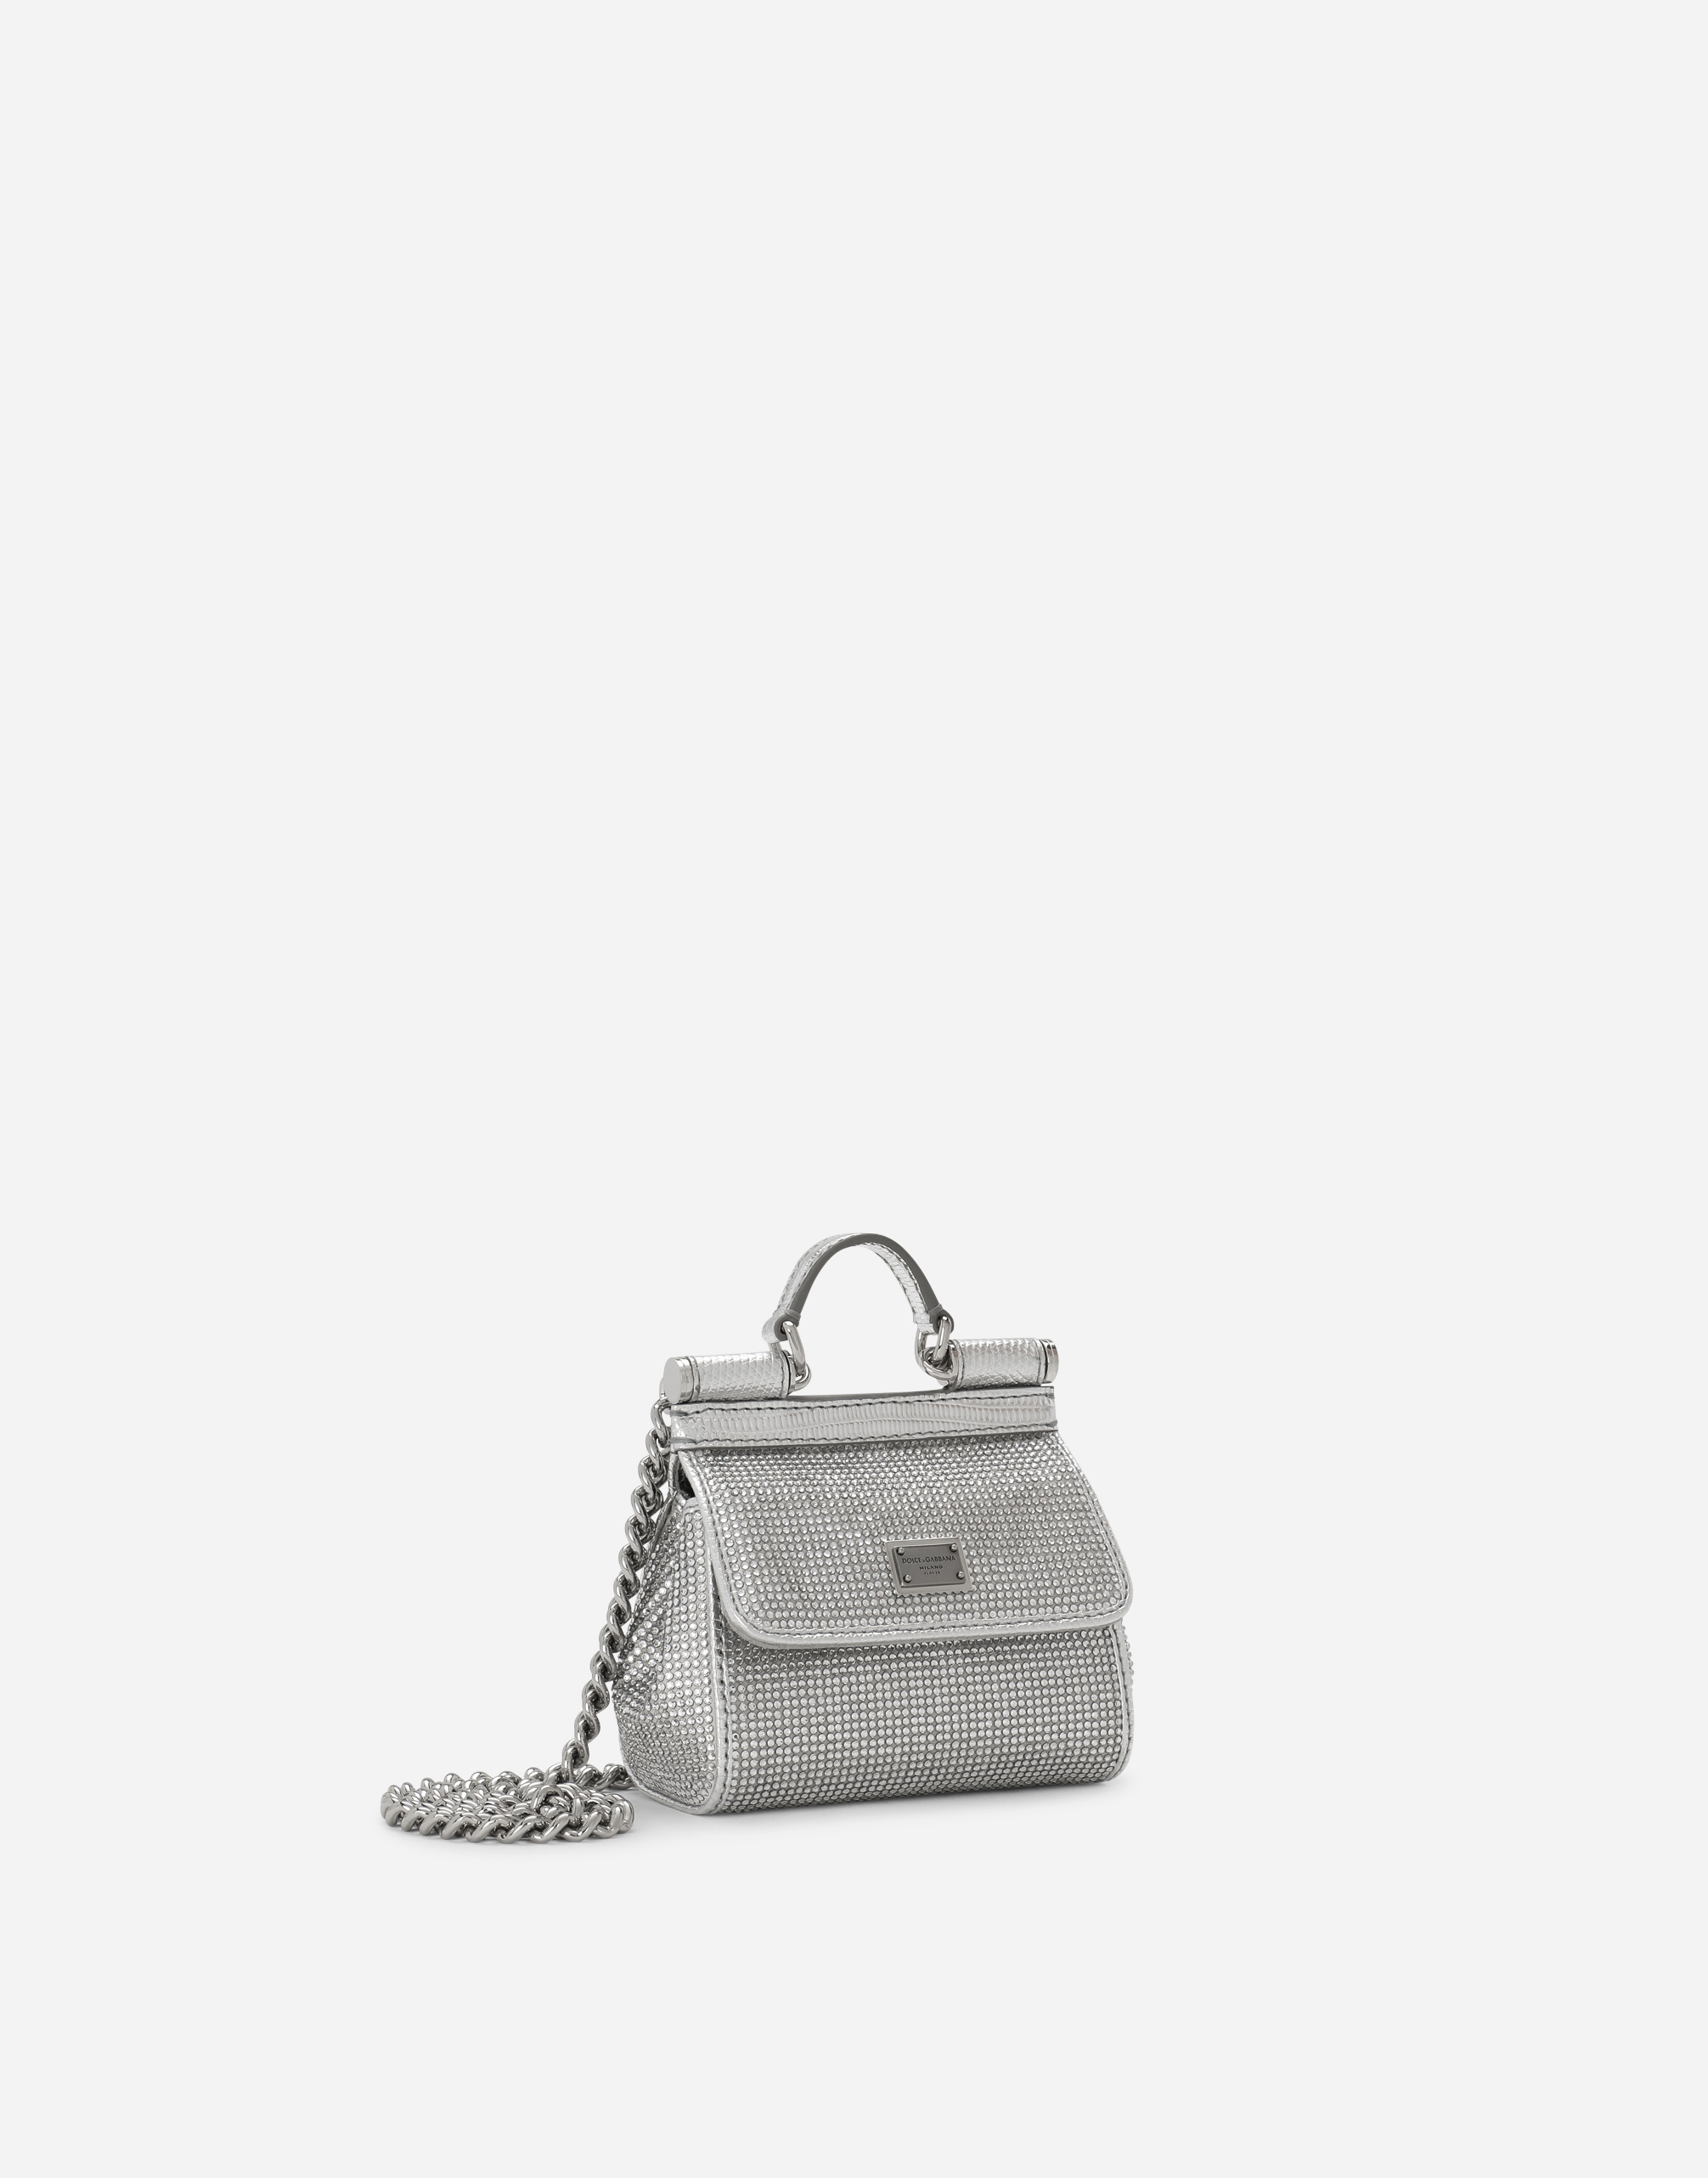 Dolce & Gabbana Silver Kim Kardashian Small Sicily Bag